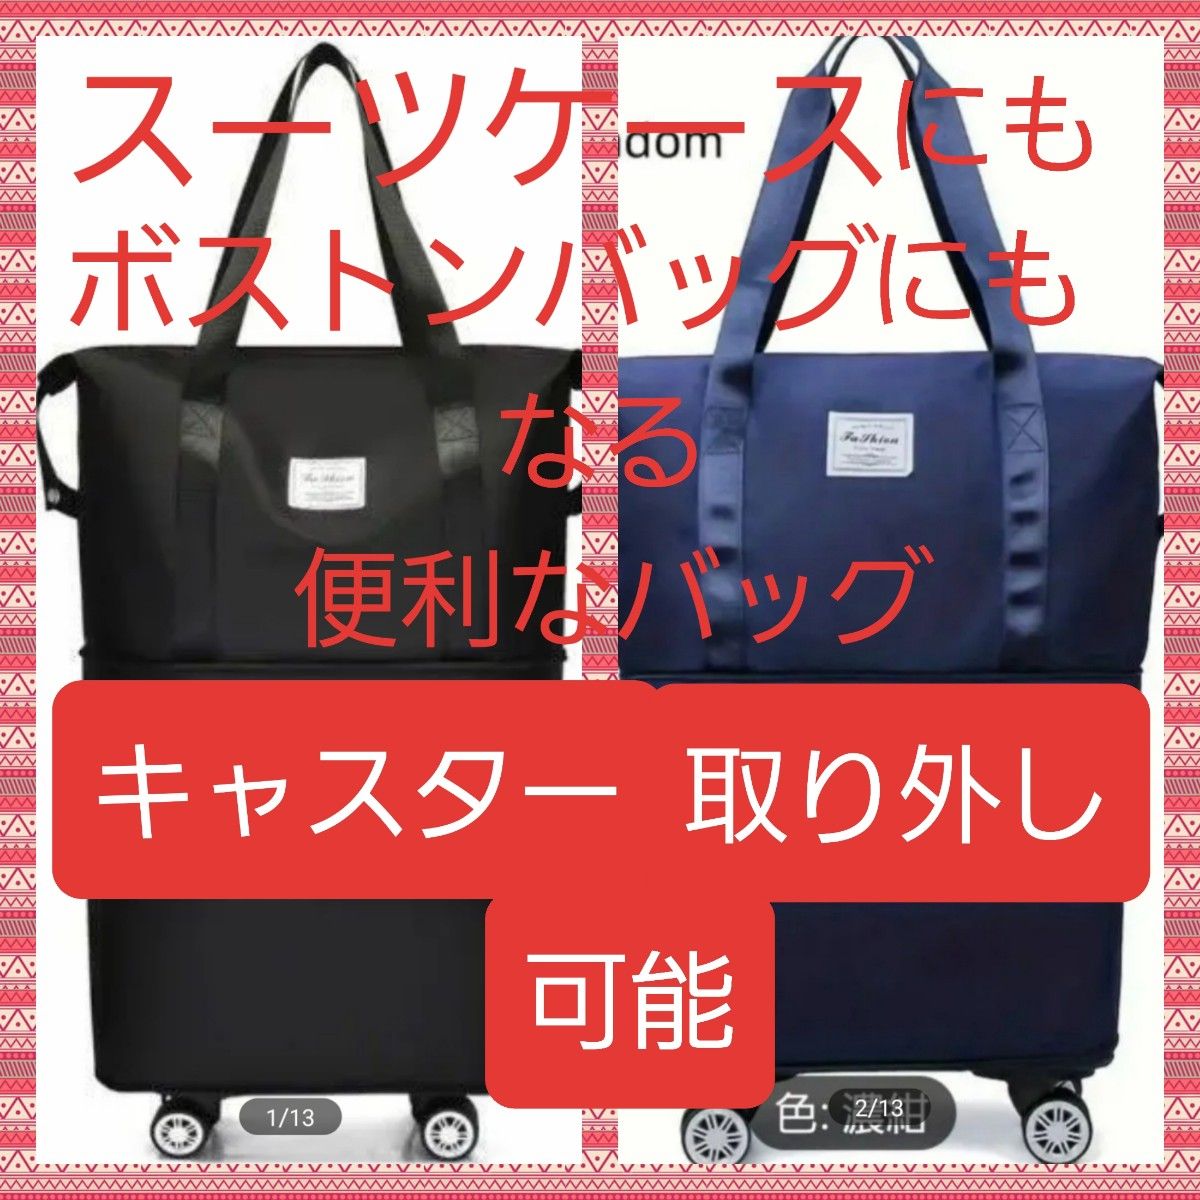 【タイムセール中】スーツケースにもなる大容量ボストンバッグ♪タイヤ取り外し3段階拡張OK  災害時避難バッグ等にも最適！2色組価格